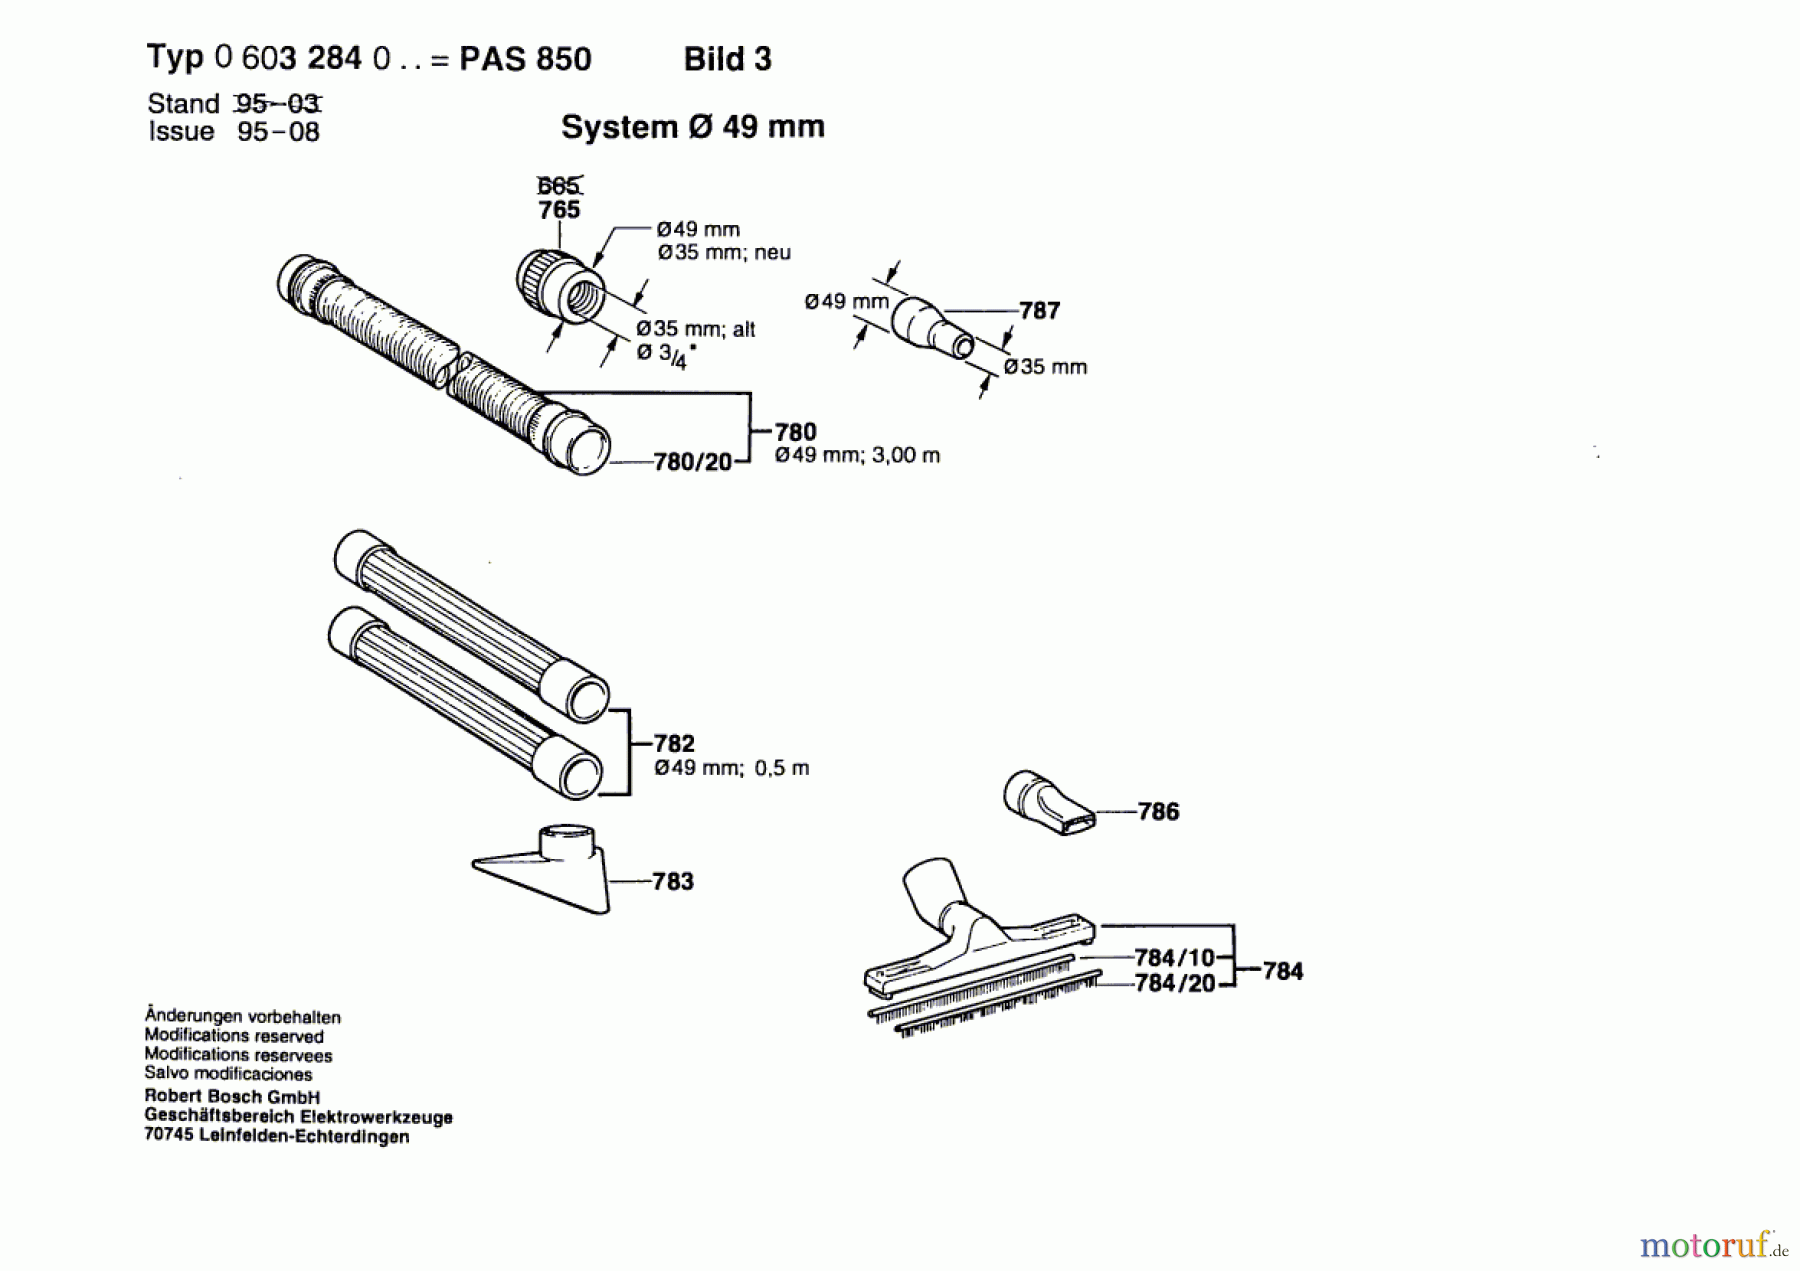  Bosch Werkzeug Allzwecksauger PAS 850 Seite 3